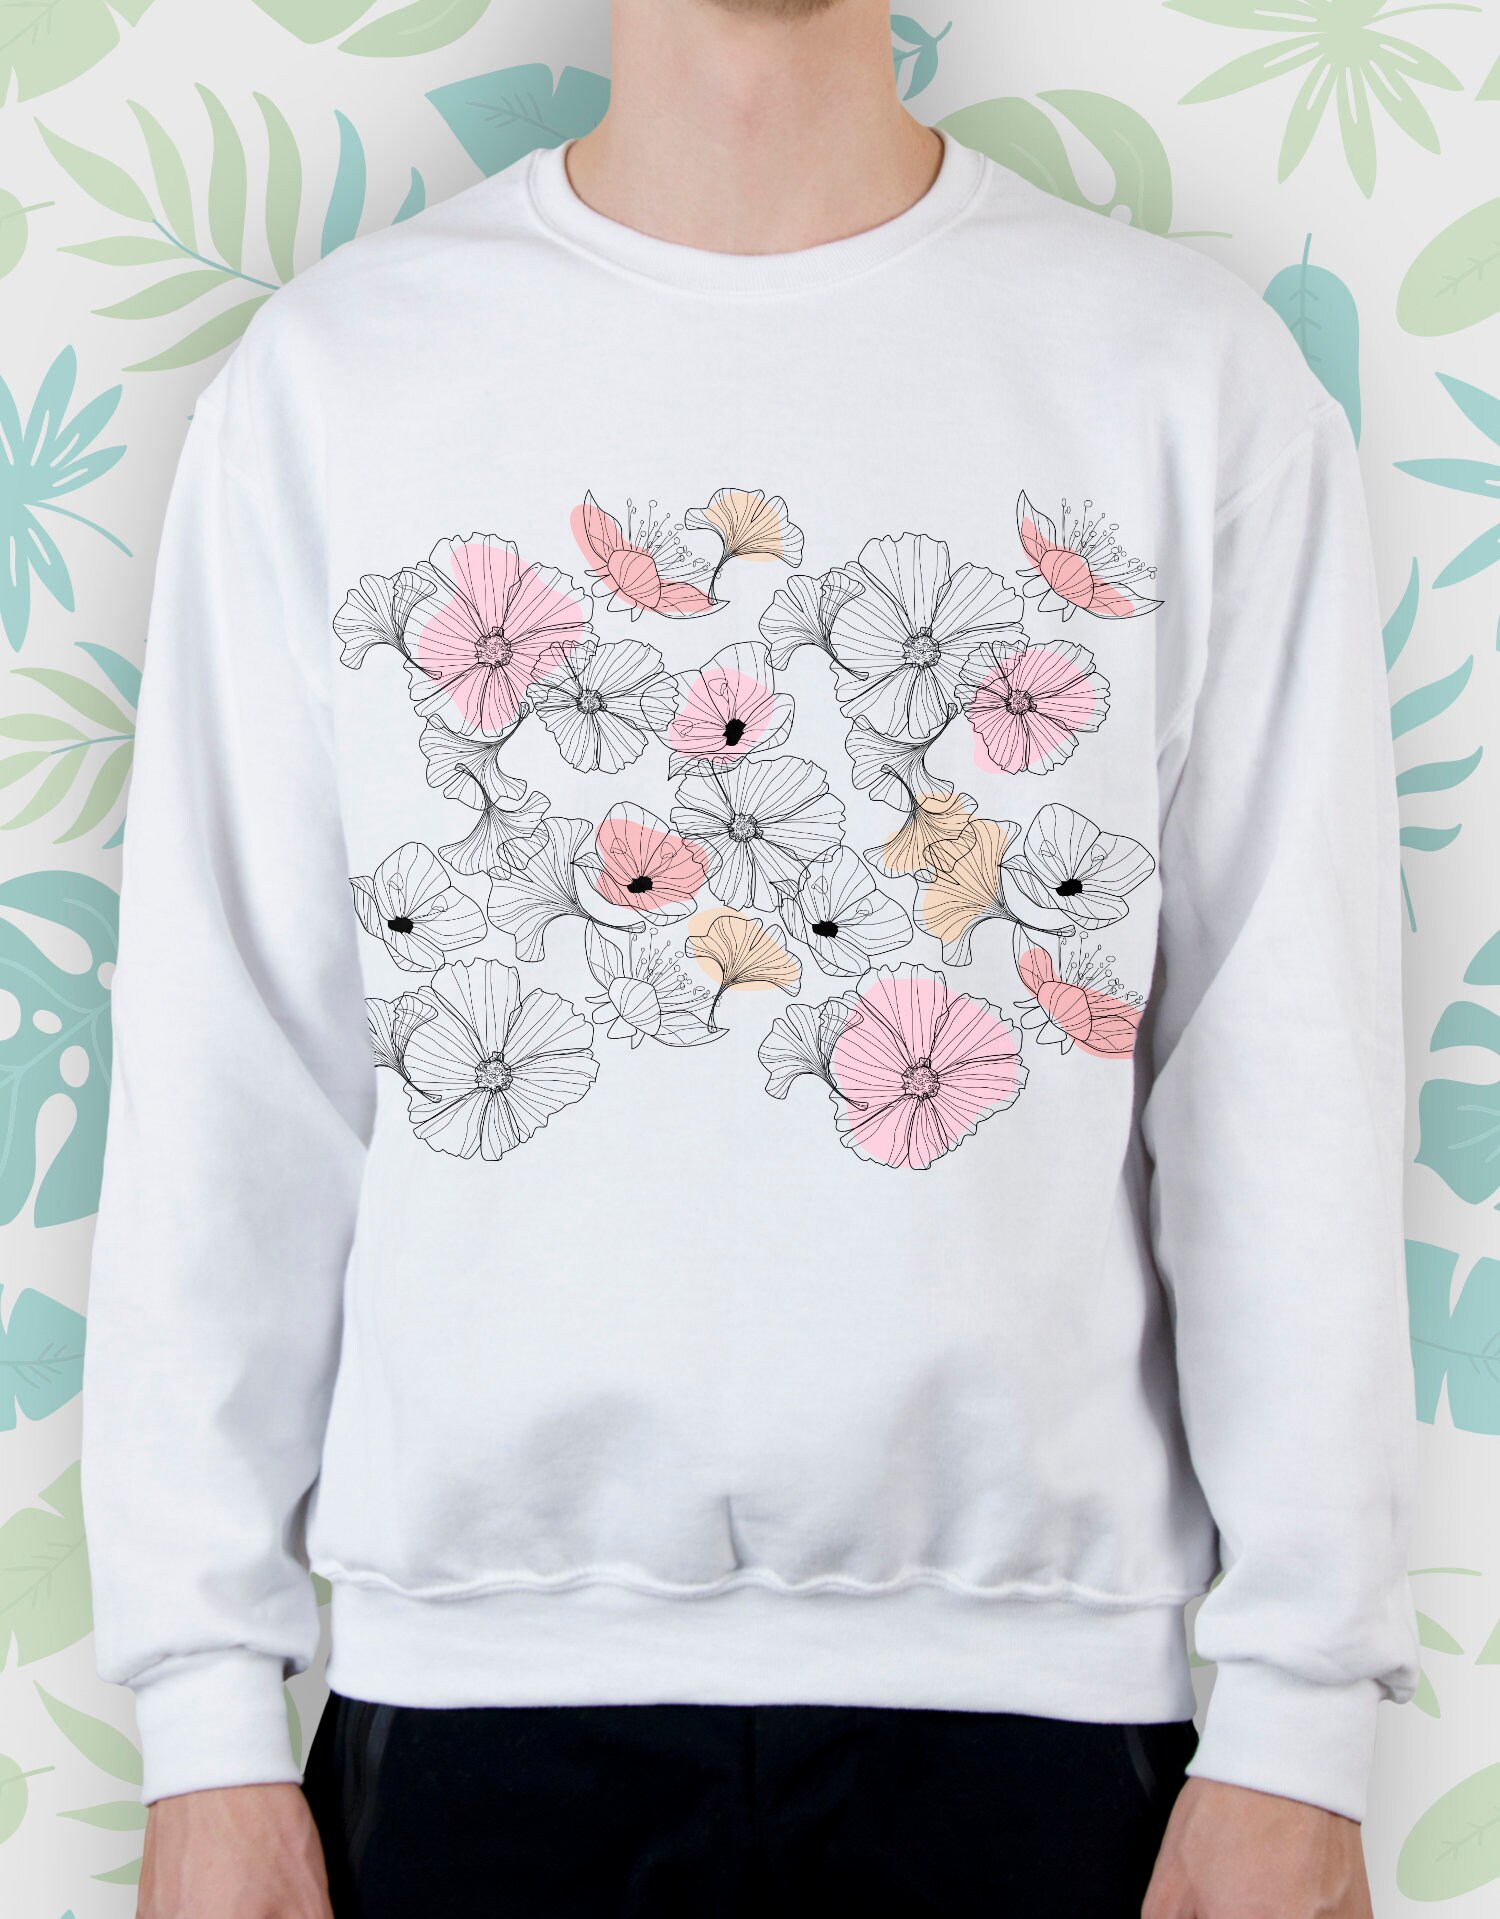 Flowers Sweatshirt for Women Girls Sweater Aesthetic Cute - Etsy